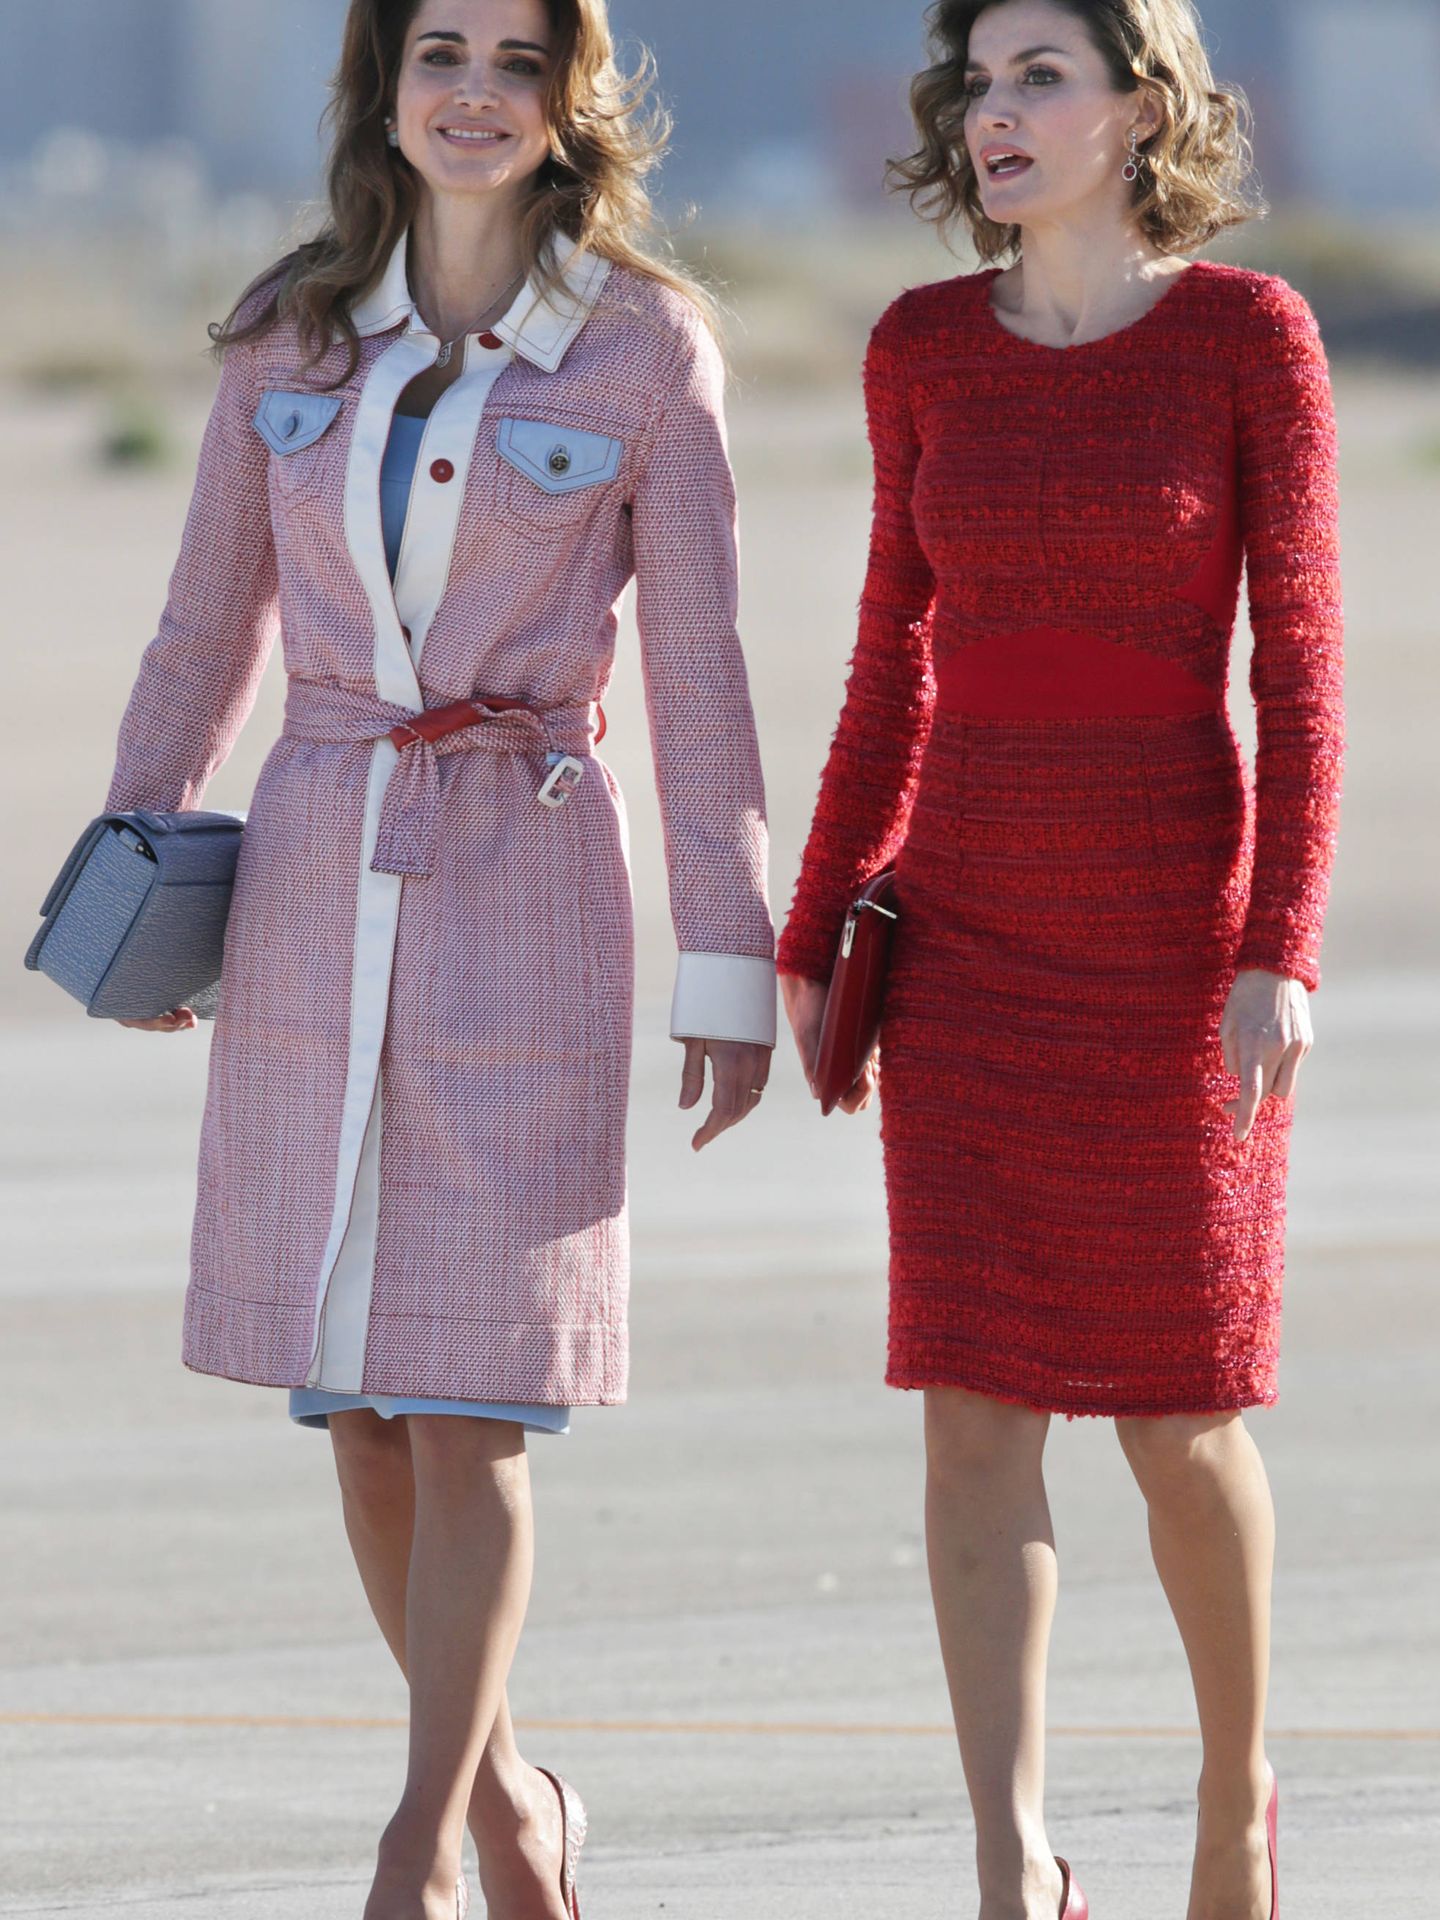   Rania y Letizia, durante la visita de los reyes jordanos a España. (Gtres)